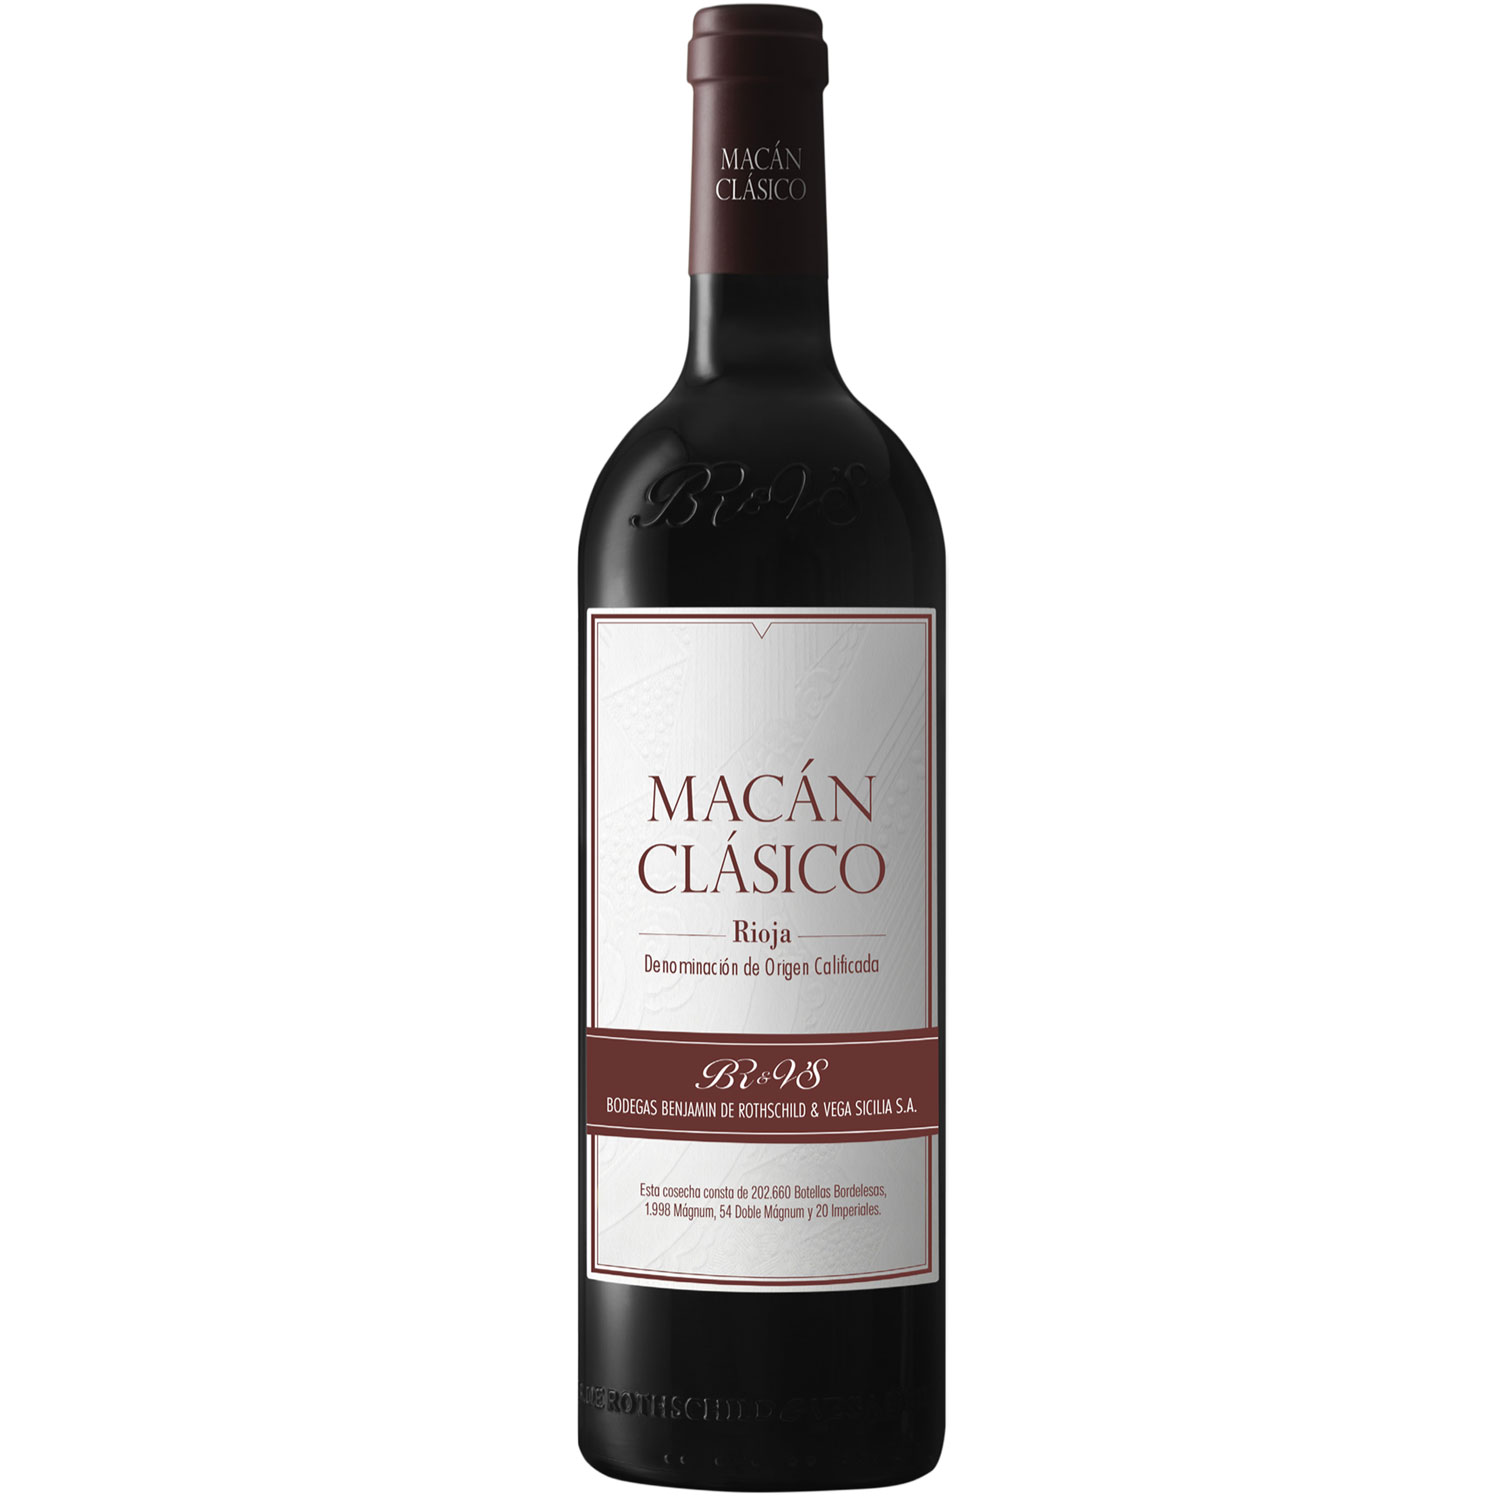 Vega Sicilia Macan Clasico Rioja 2020